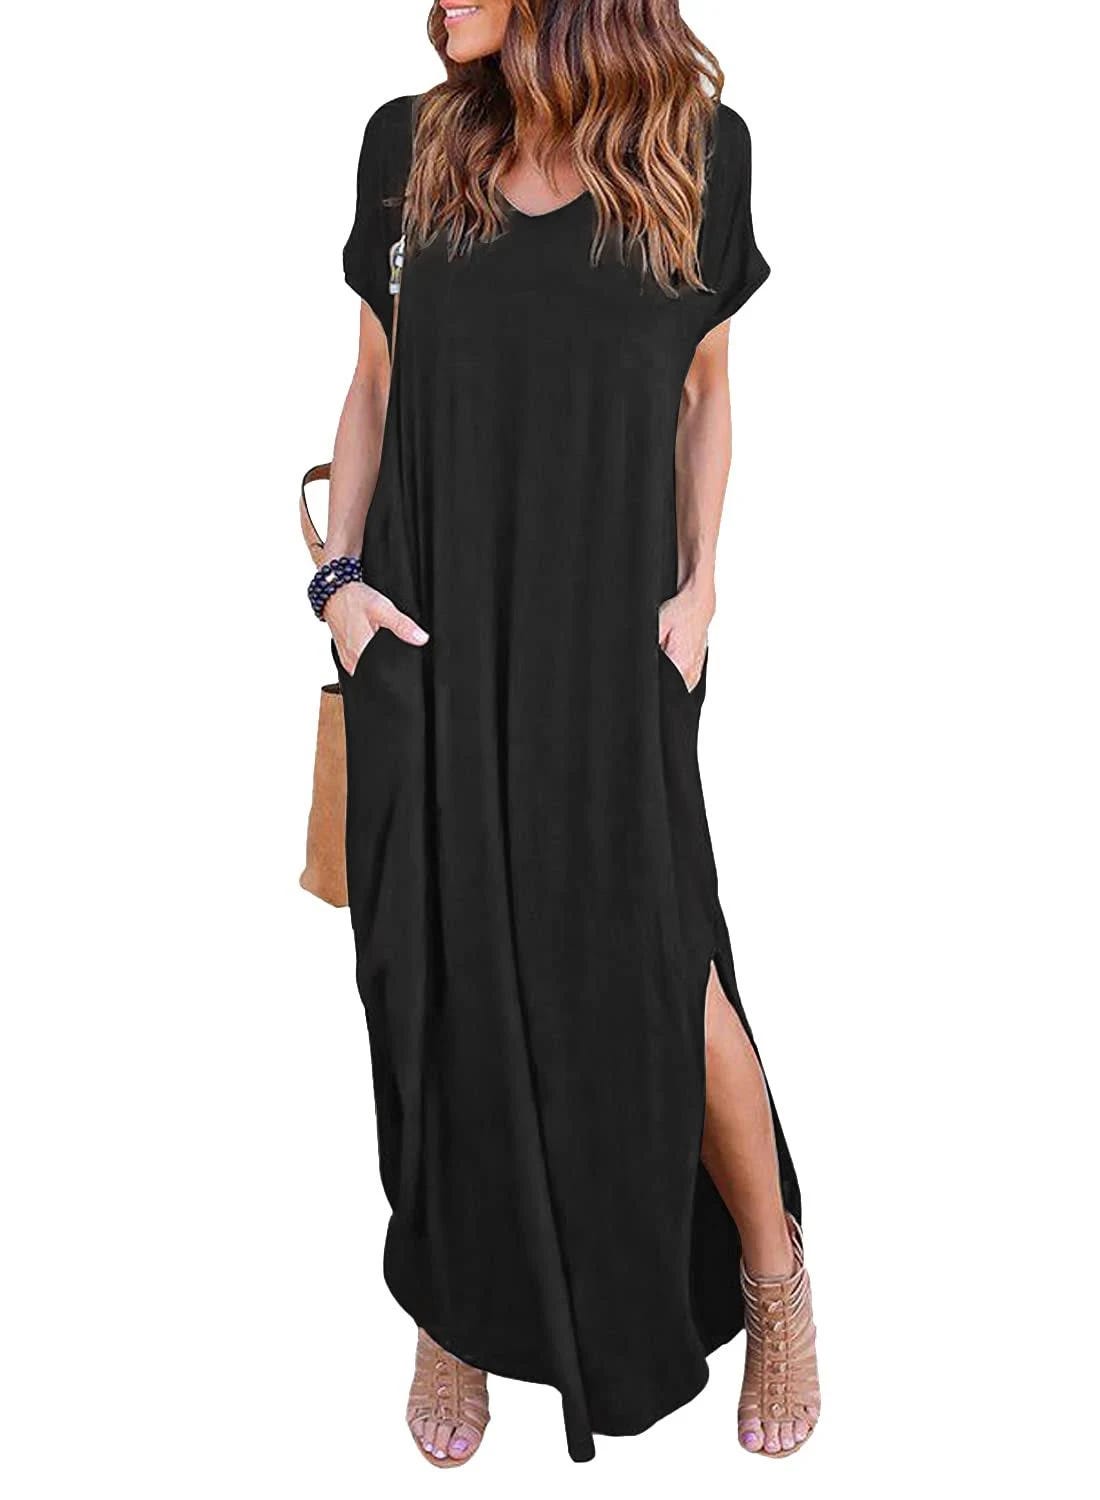 Stylish, Casual Short Sleeve V-Neck Maxi Dress for Women | Image